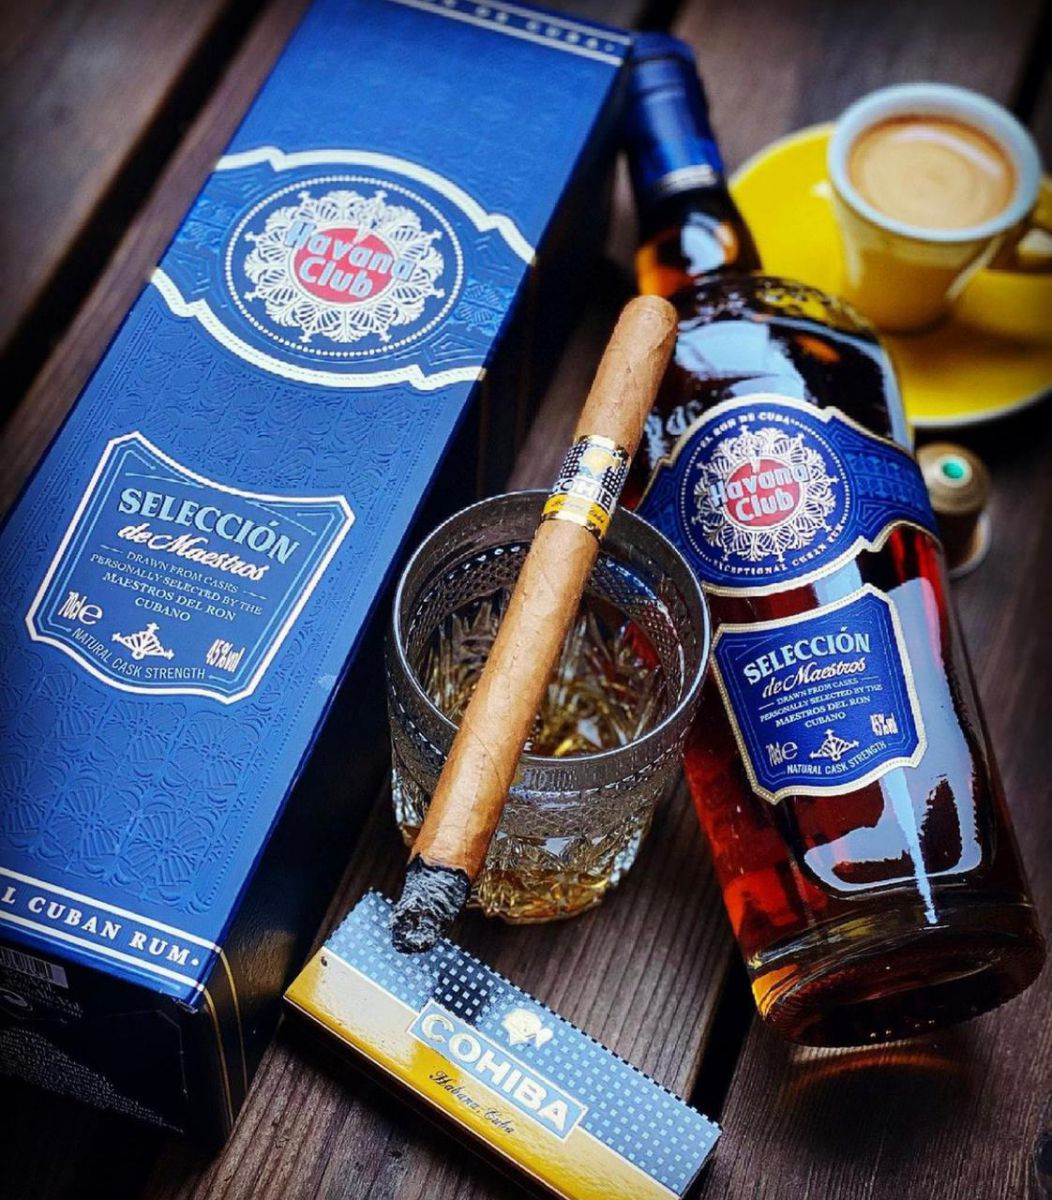  rượu rum HAVANA CLUB SELECCION DE MAESTROS kết hợp xì gà cuba là số 1